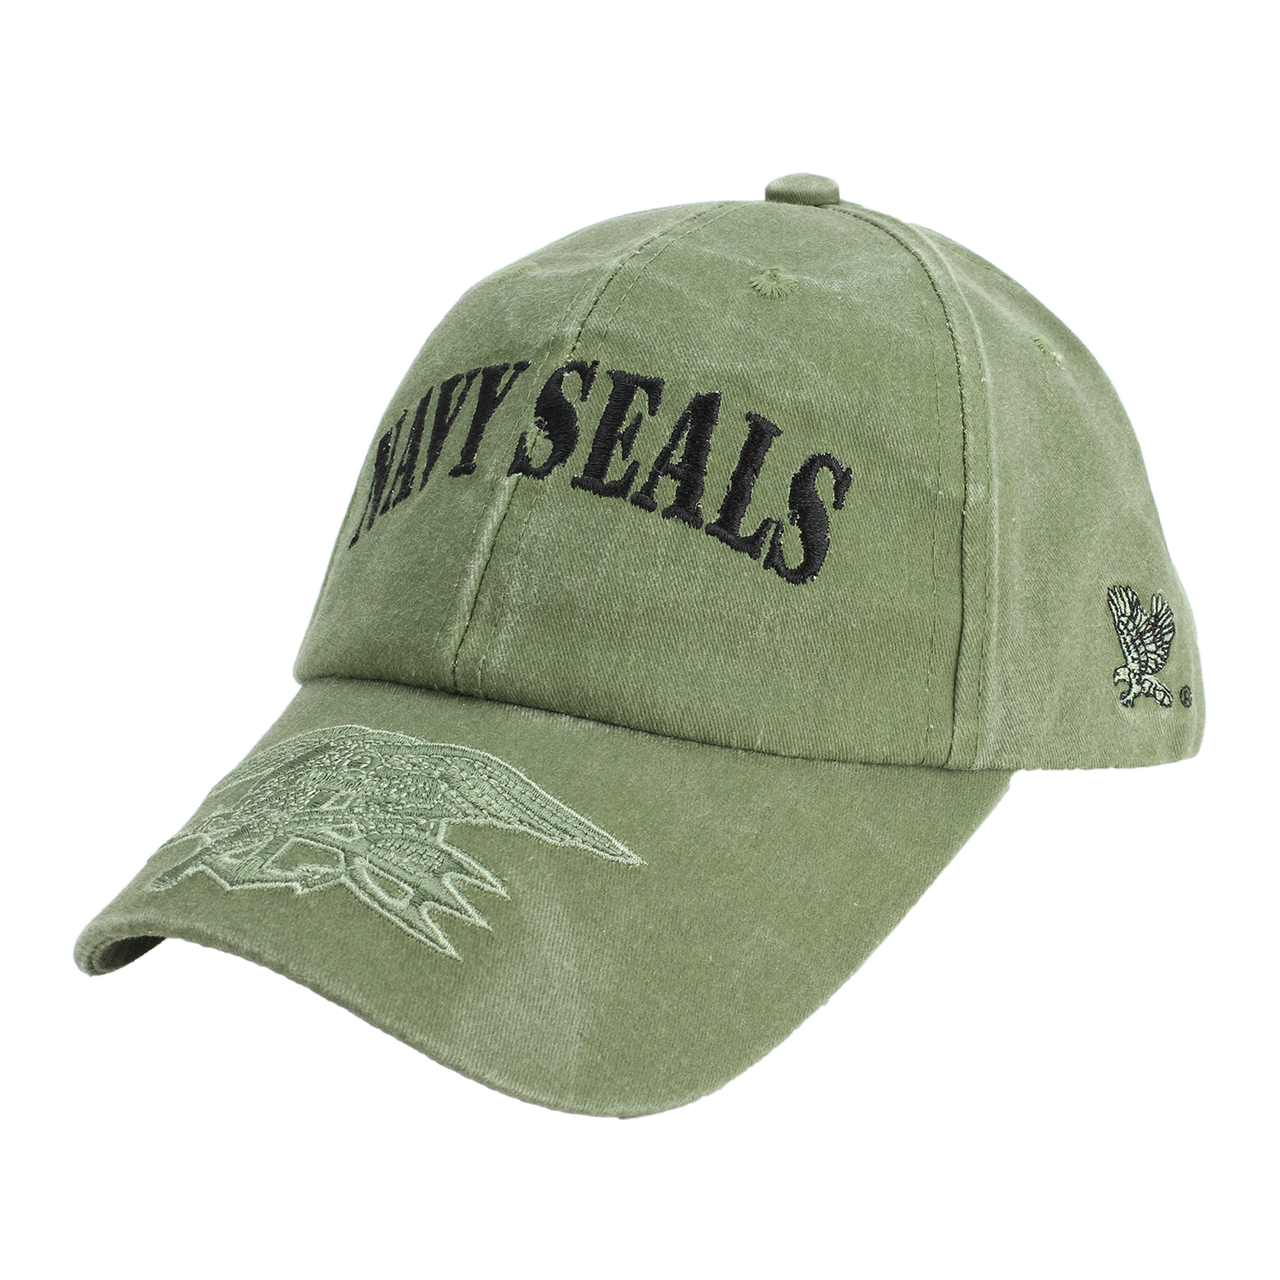 overdrive Utænkelig Hilsen Navy SEALs Hat (Olive) - Navy SEAL Museum SHIP Store